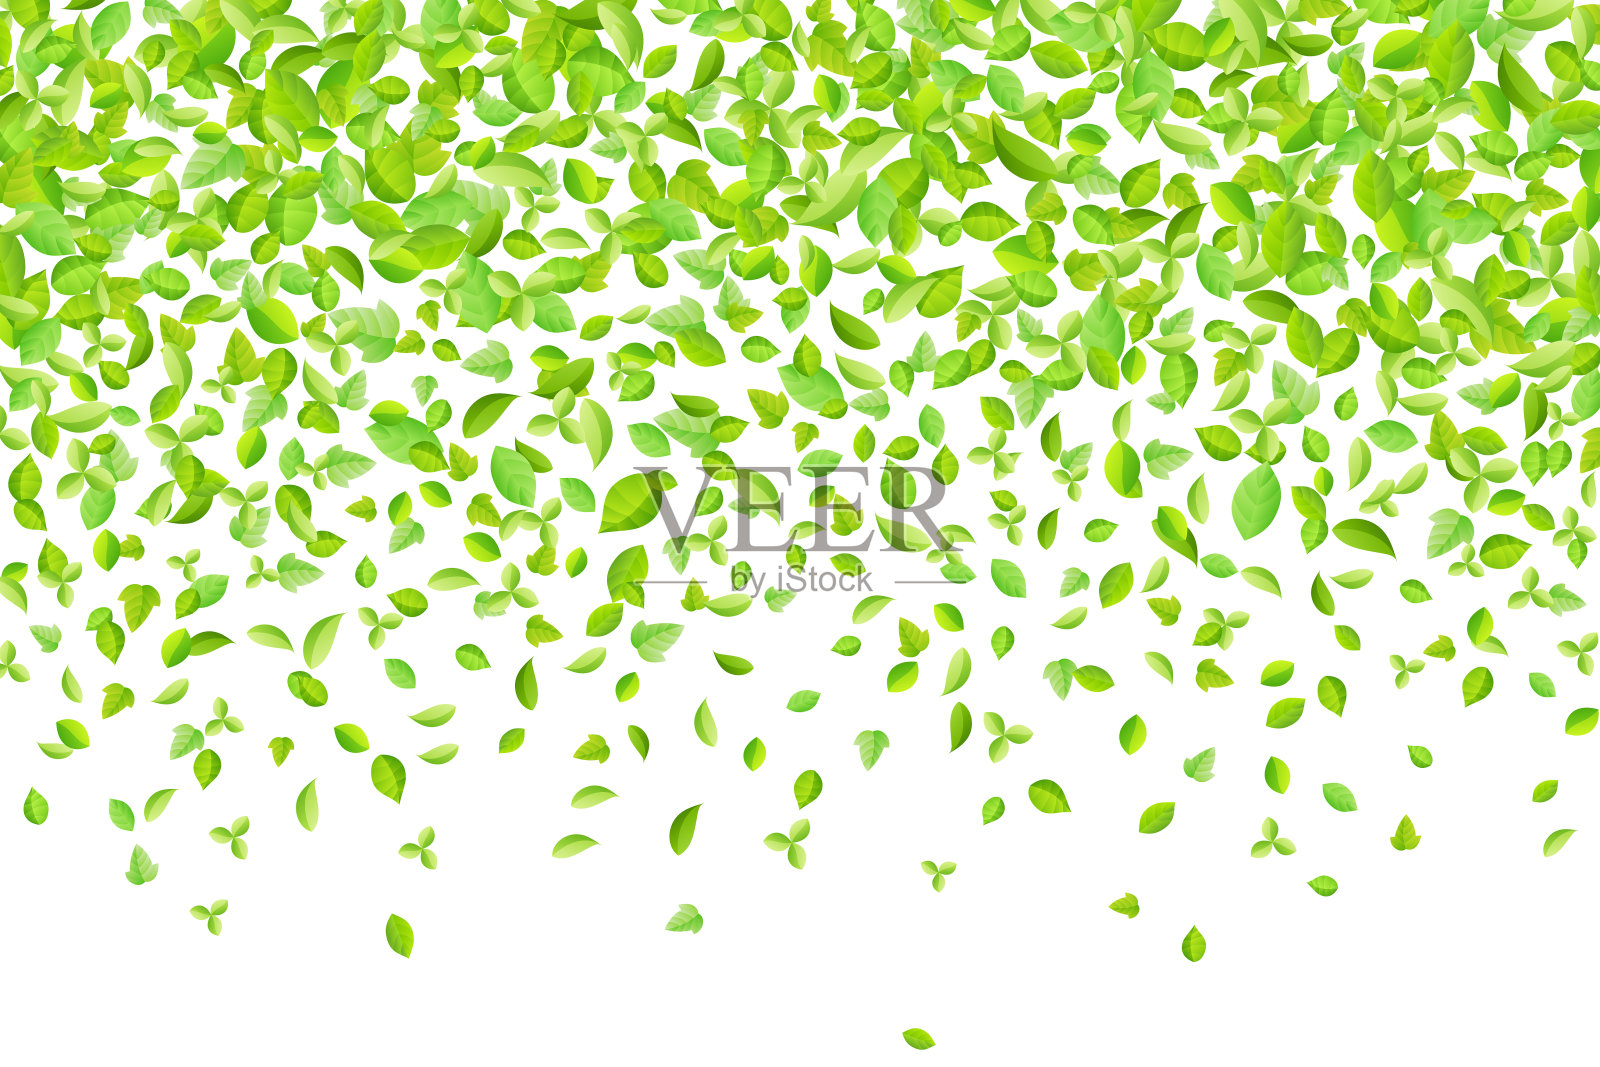 矢量清新的春天的绿叶背景贺卡在扁平风格设计元素图片